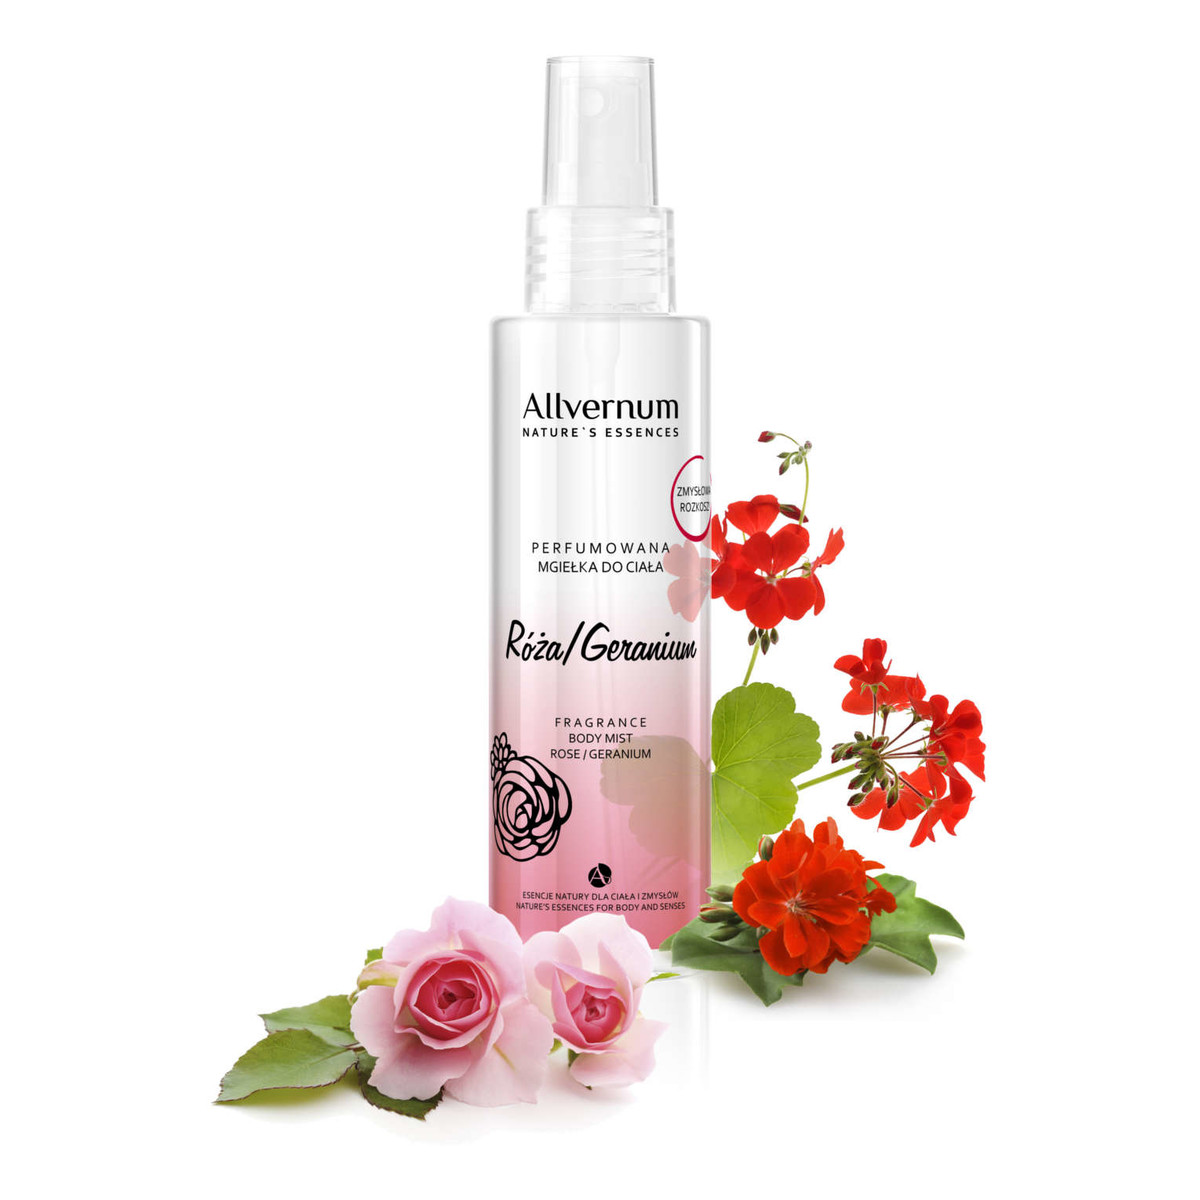 Allvernum Nature's Essences Mgiełka do ciała perfumowana Róża & Geranium 125ml